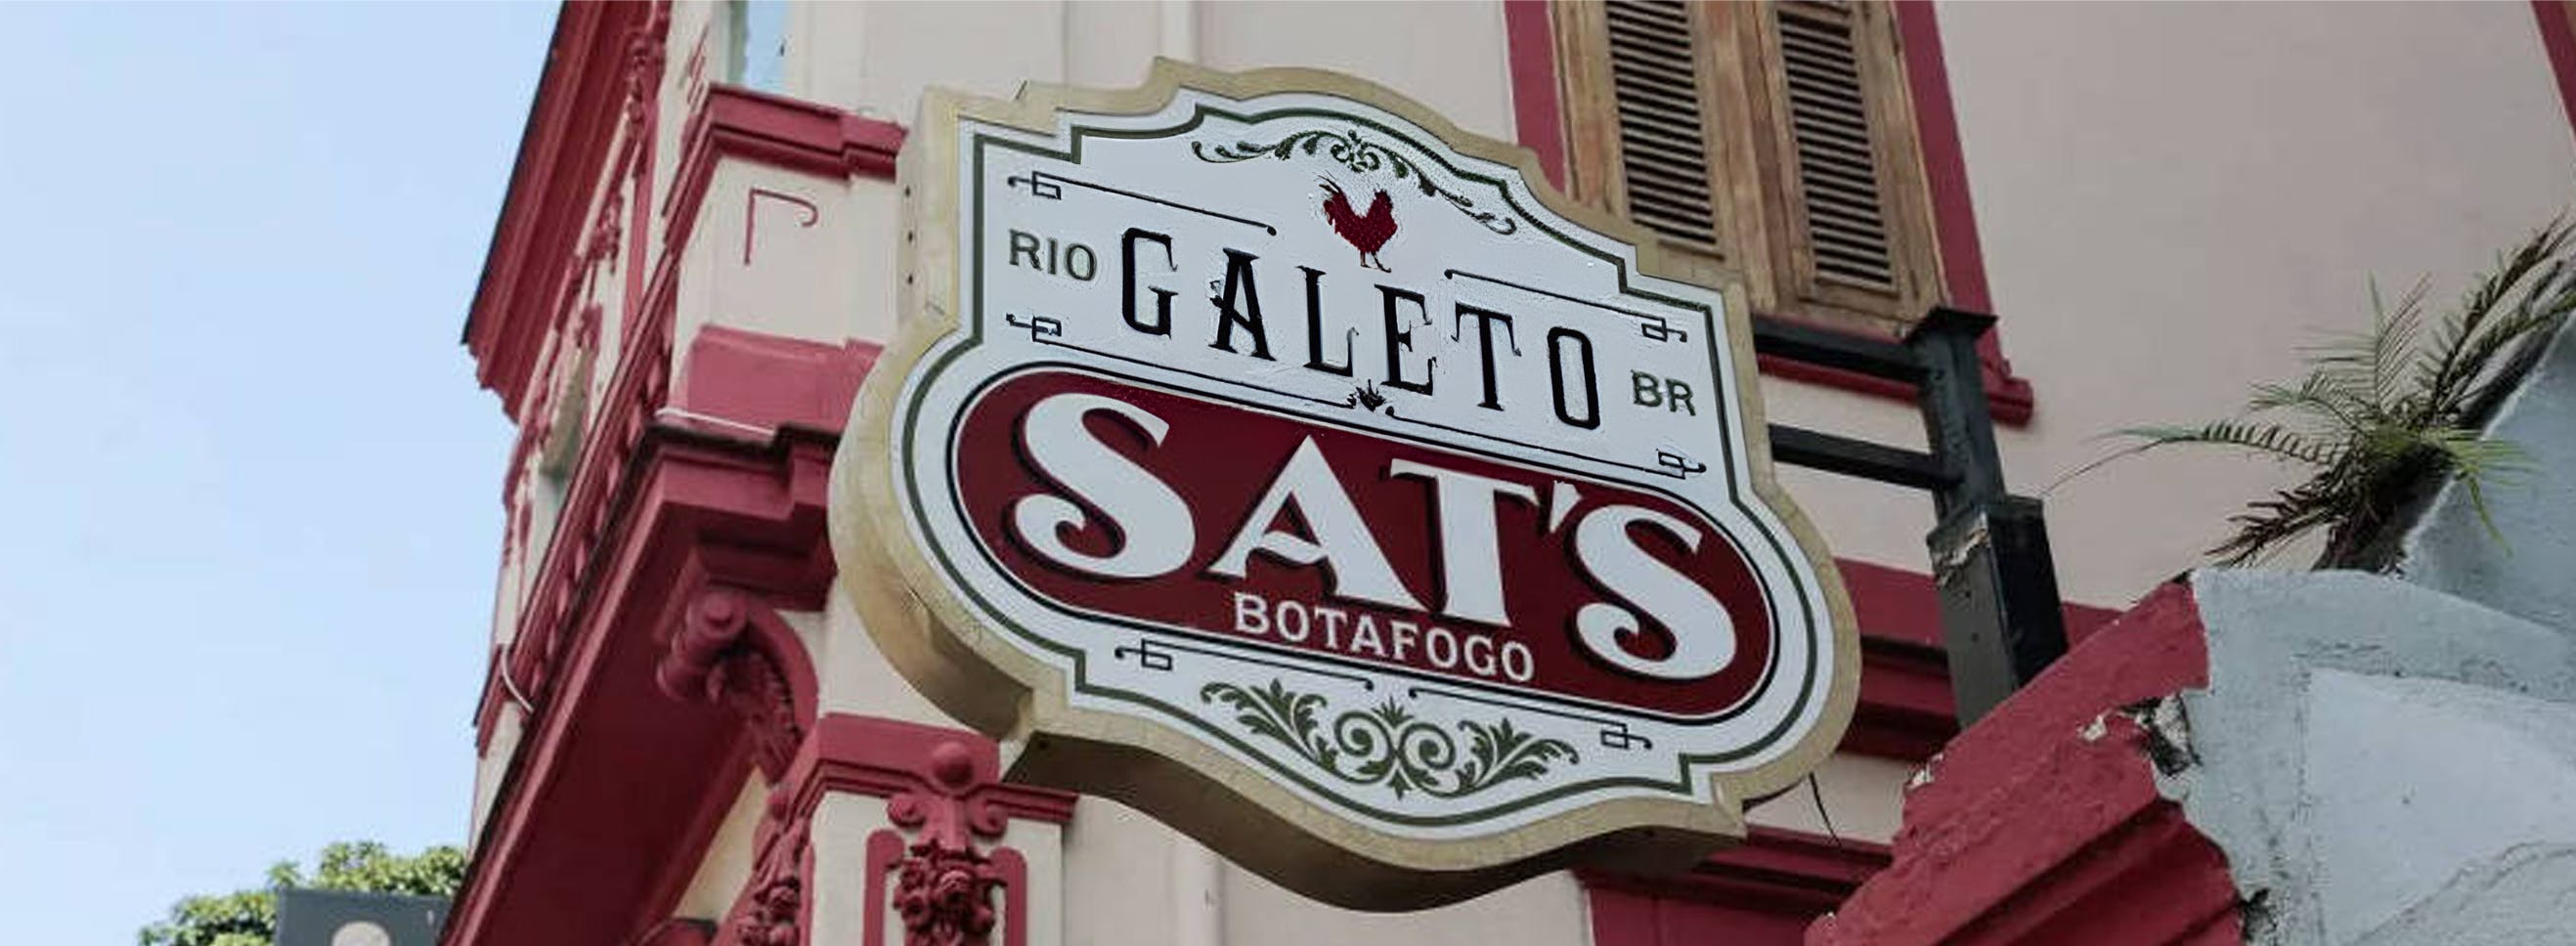 Foto da placa do bar Galeto Sat's